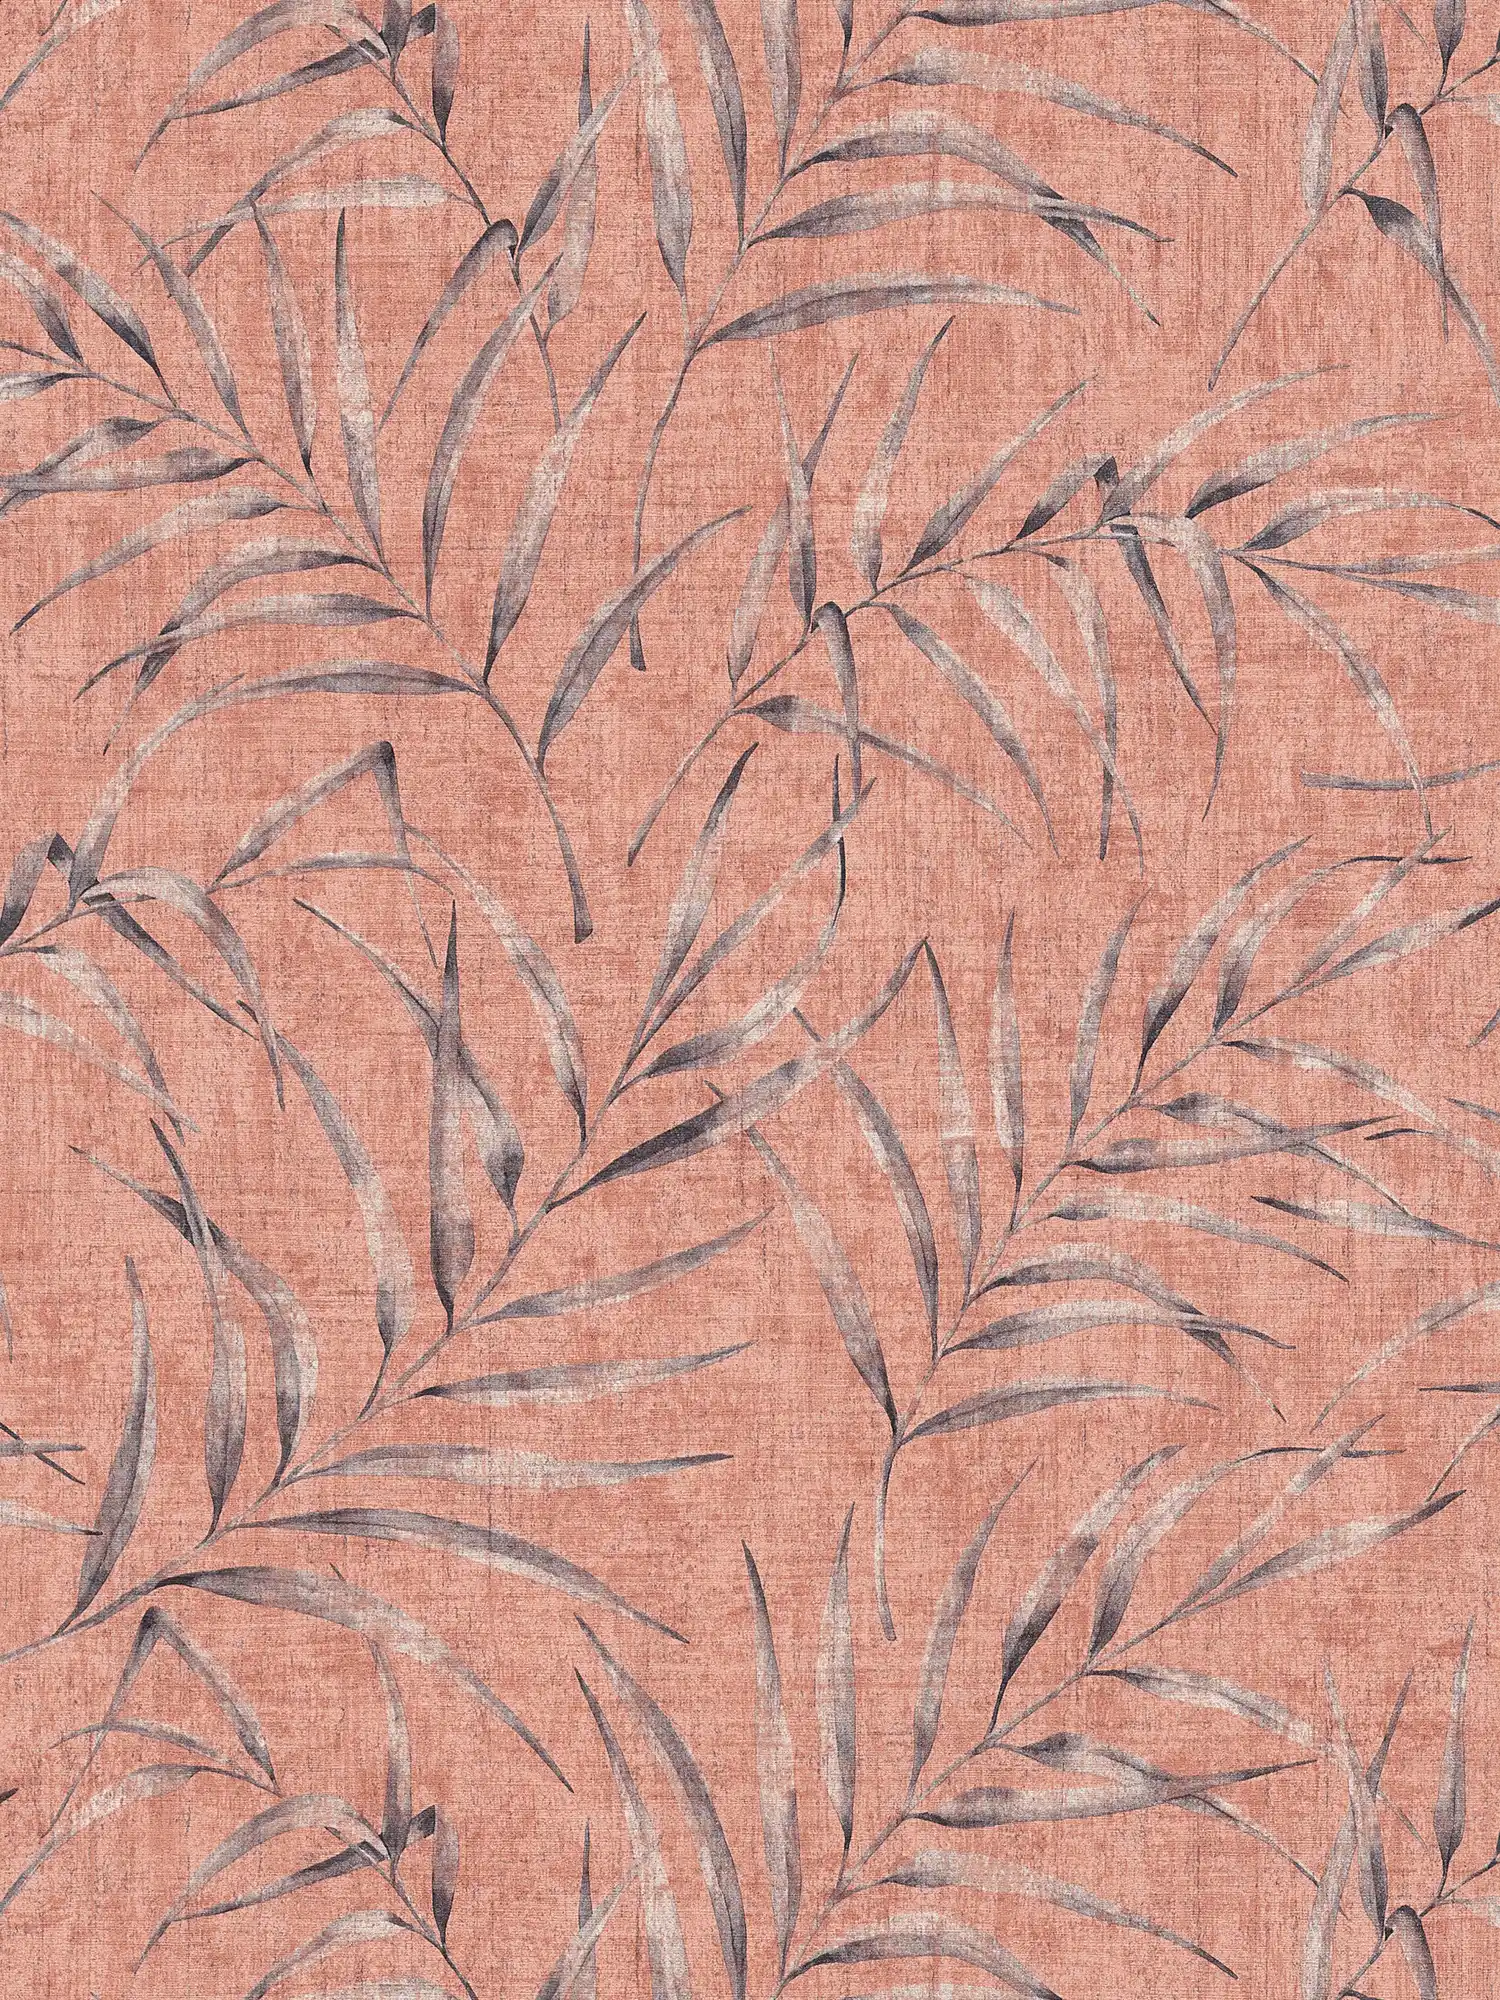 behang bladmotief & linnenlook - roze, oranje, rood
